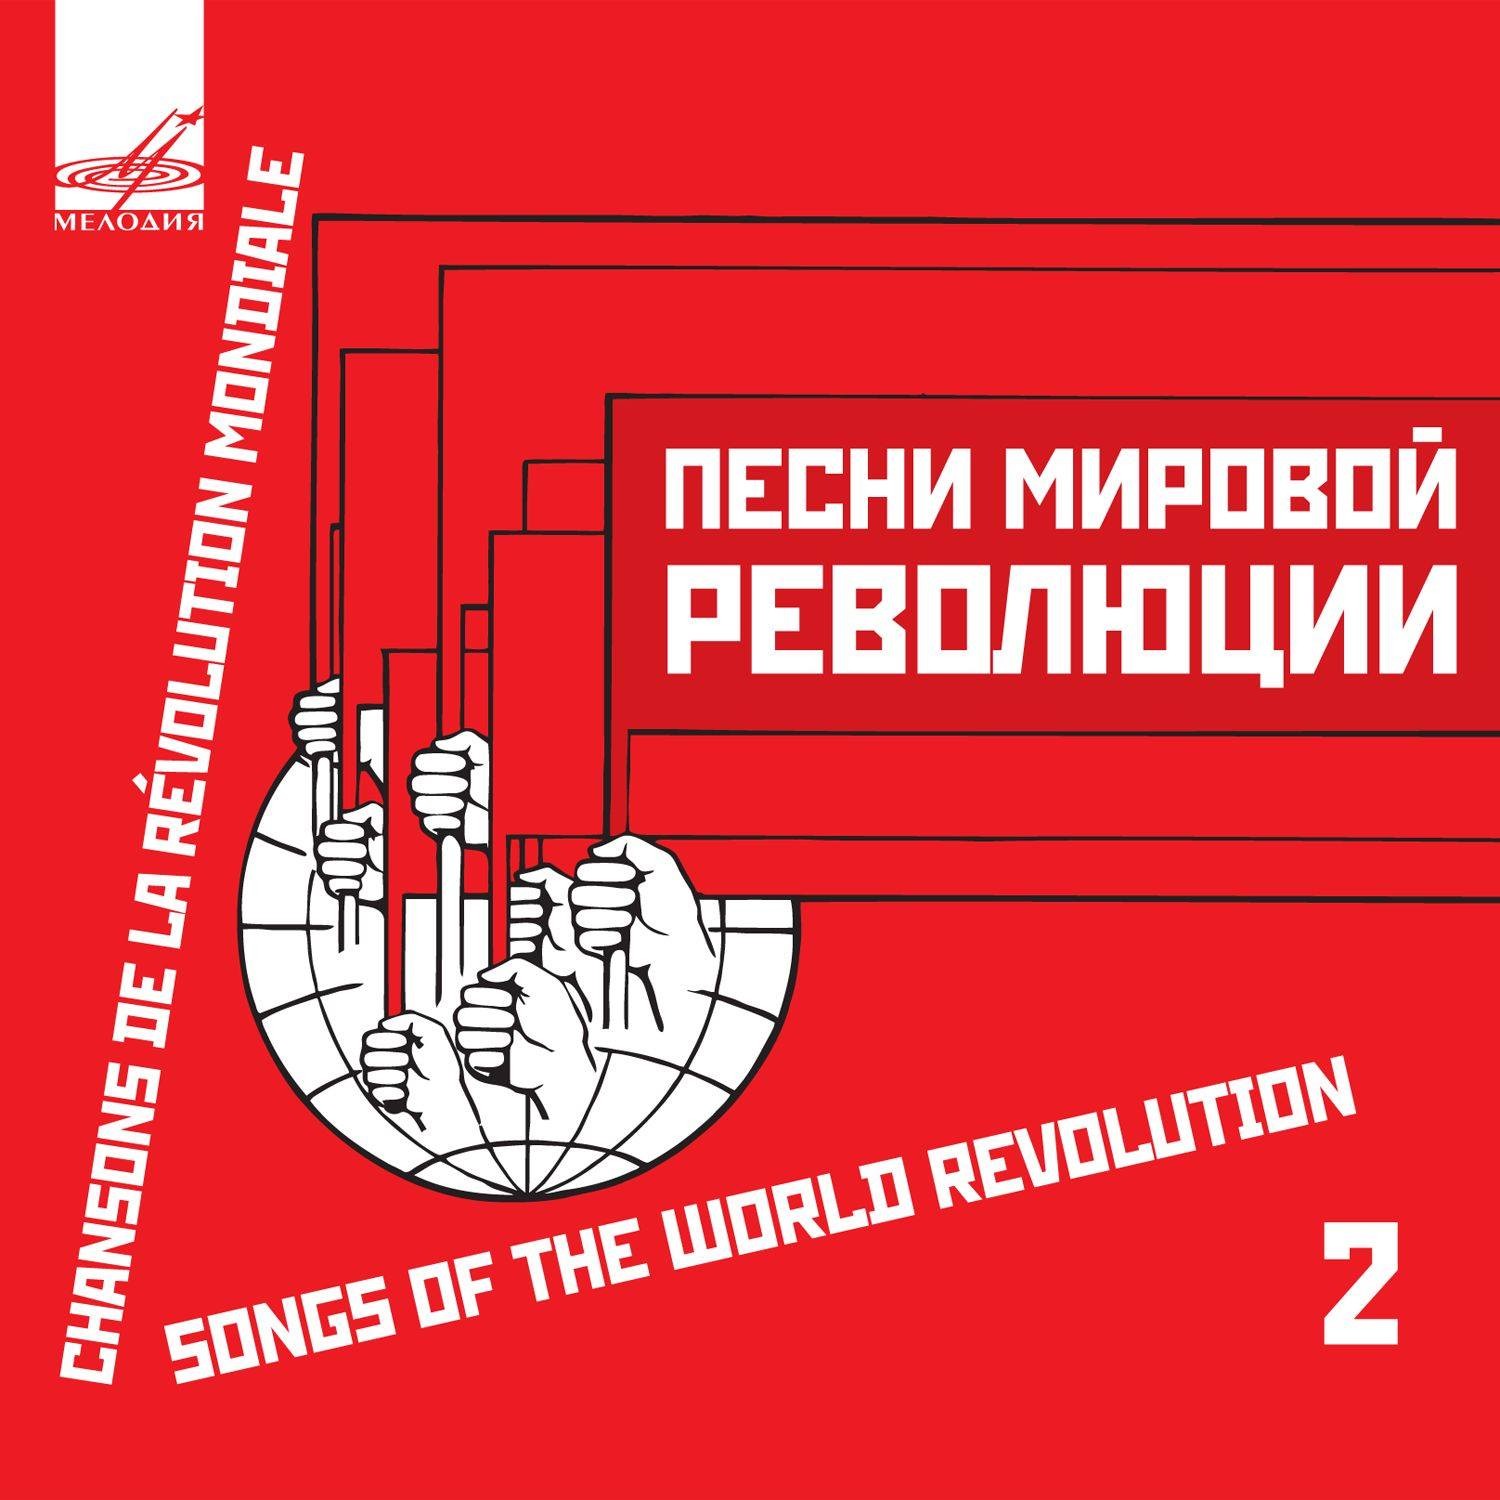 Песни мировой революции 2